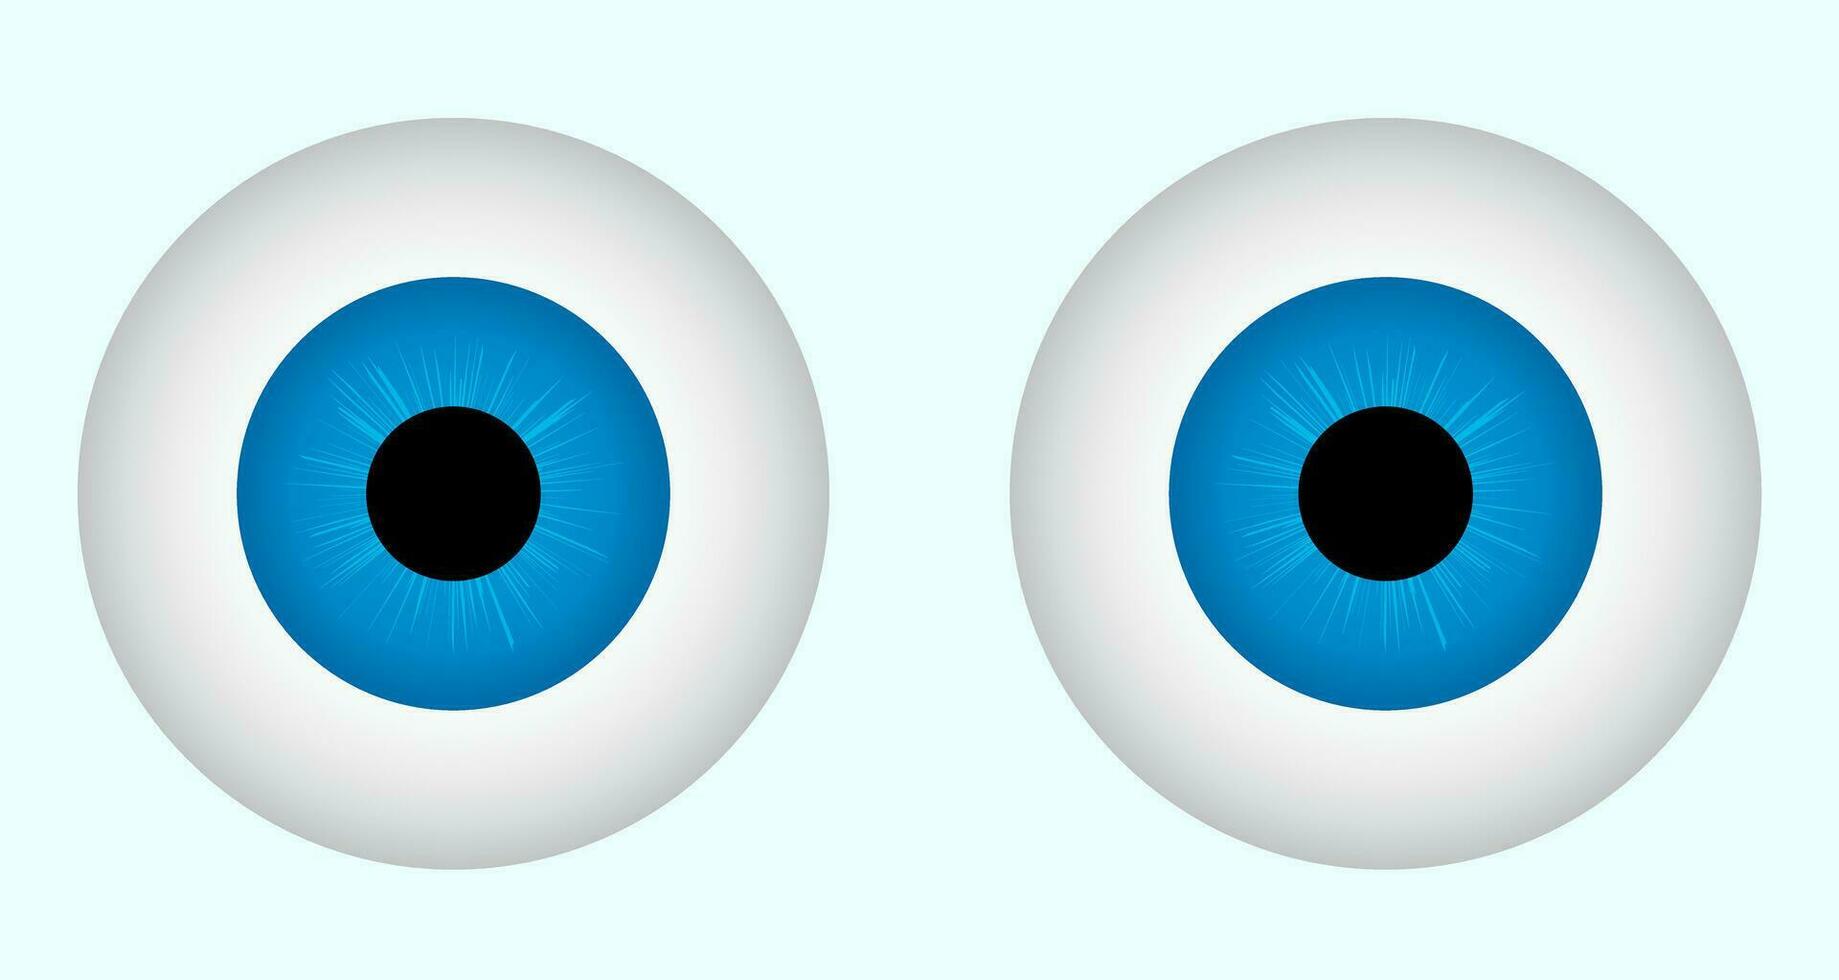 cartone animato blu occhi vettore